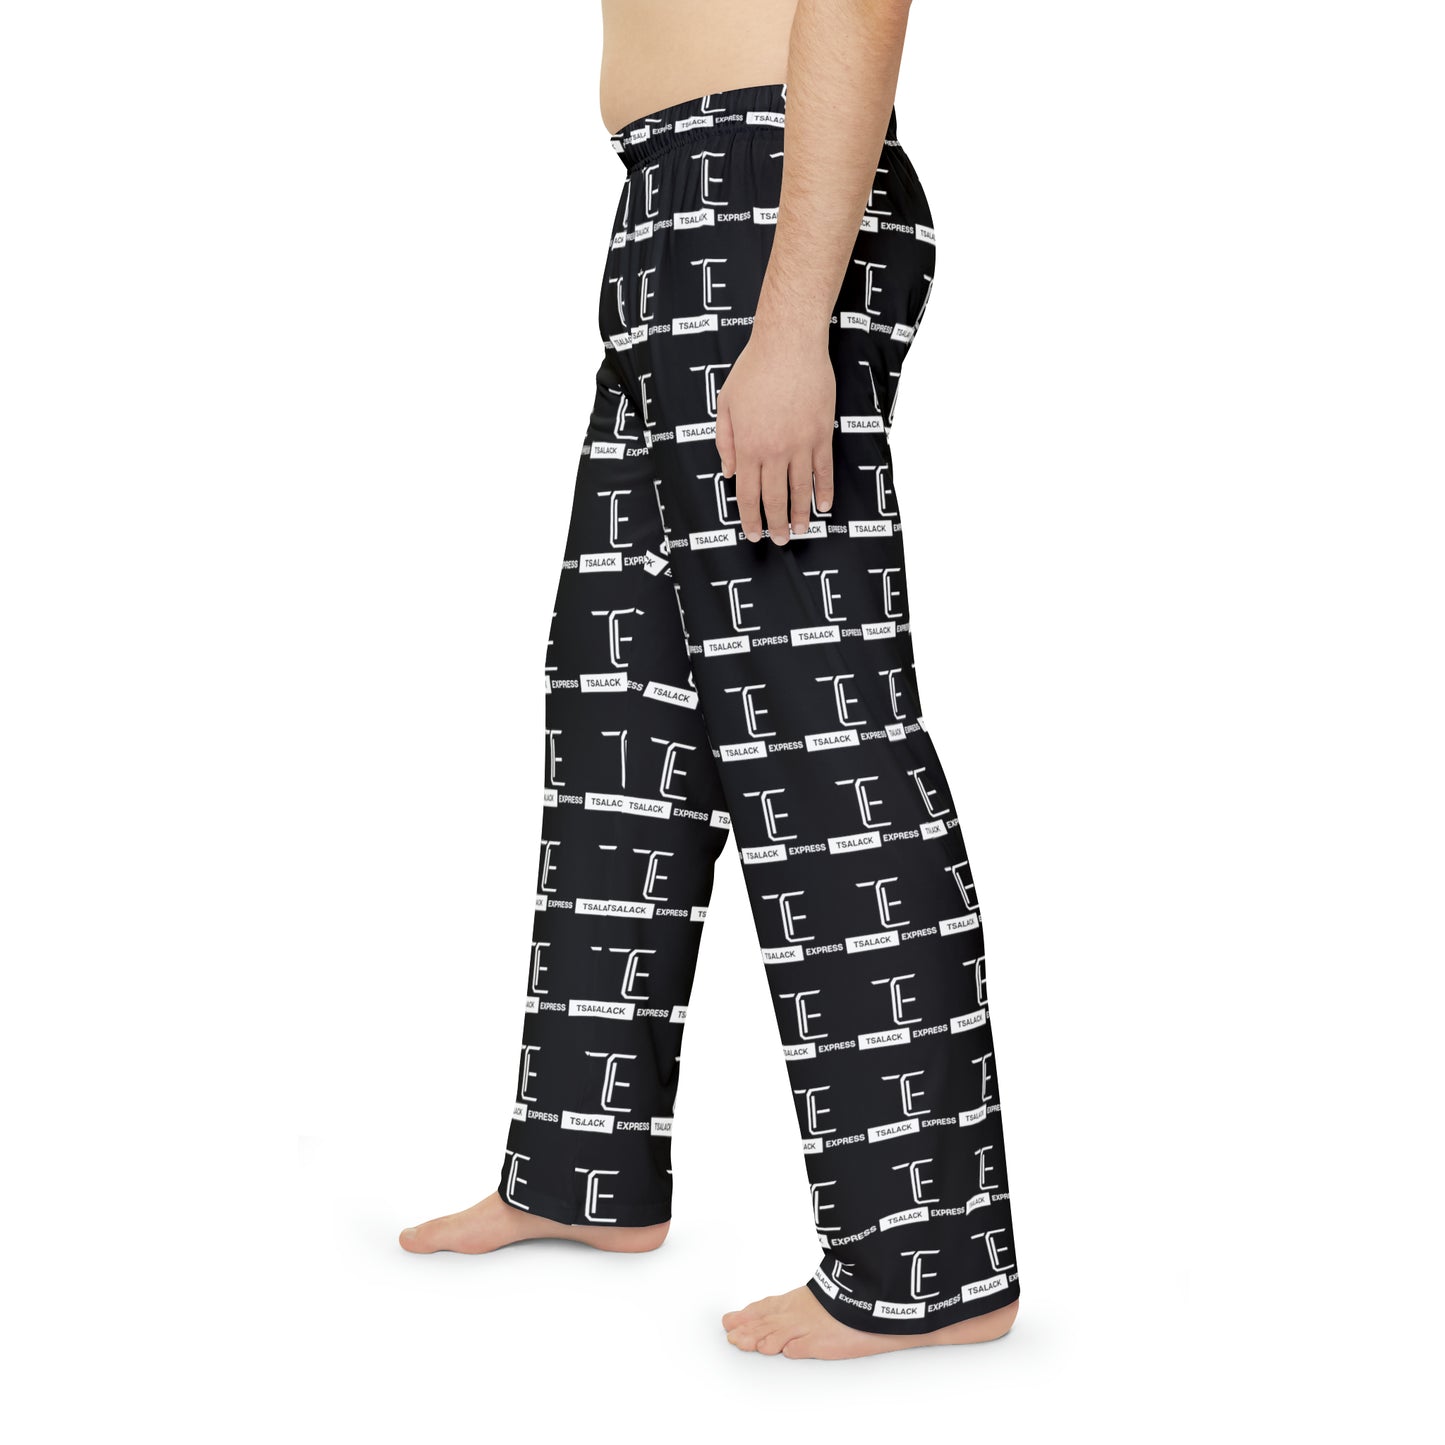 Tsalack Express Men's Pajama Pants (AOP)